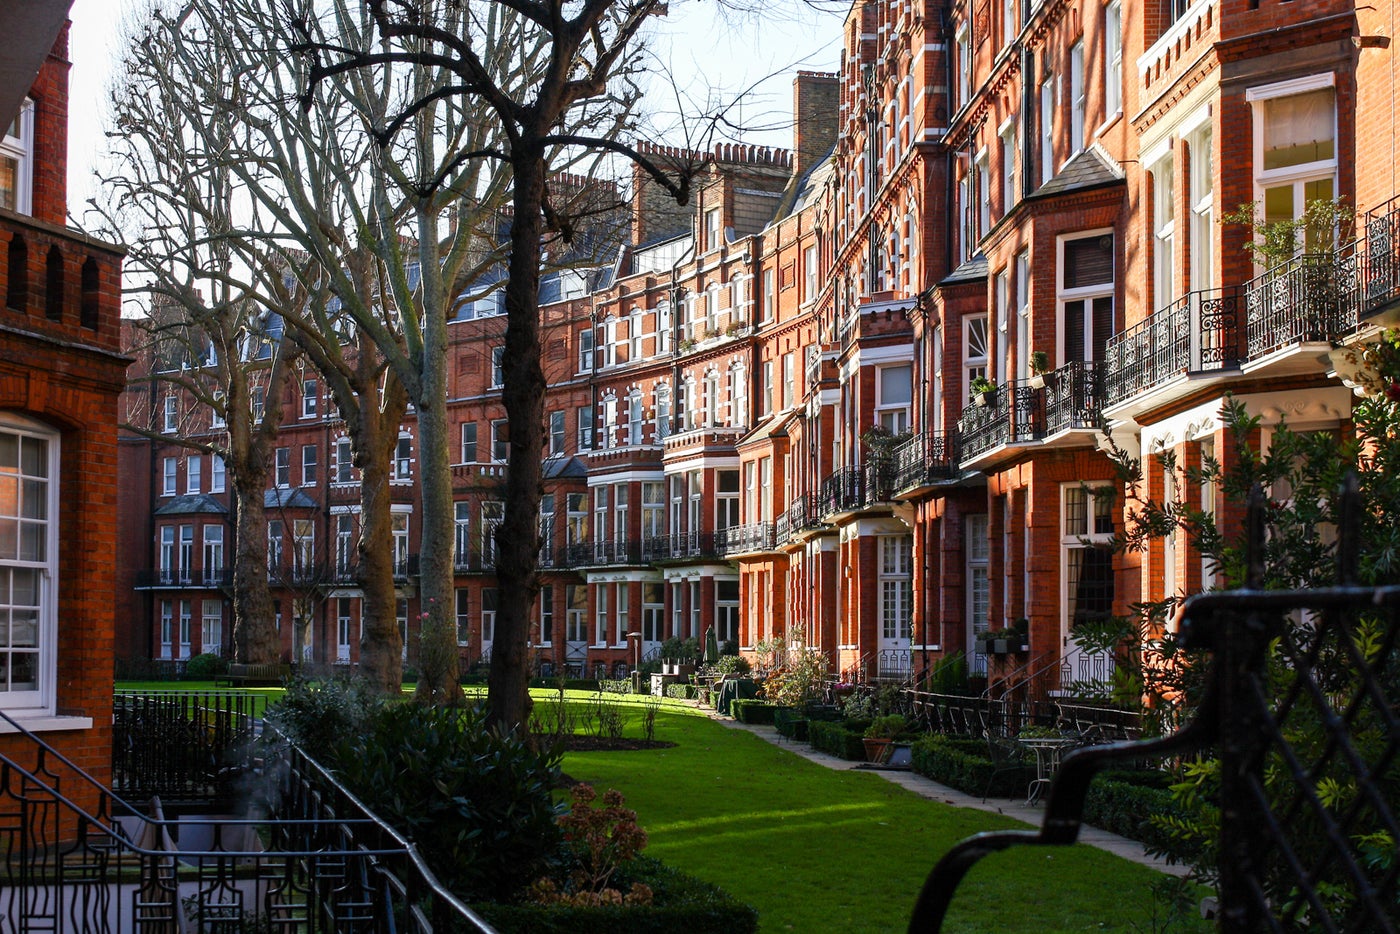 An expert's guide to London neighborhoods